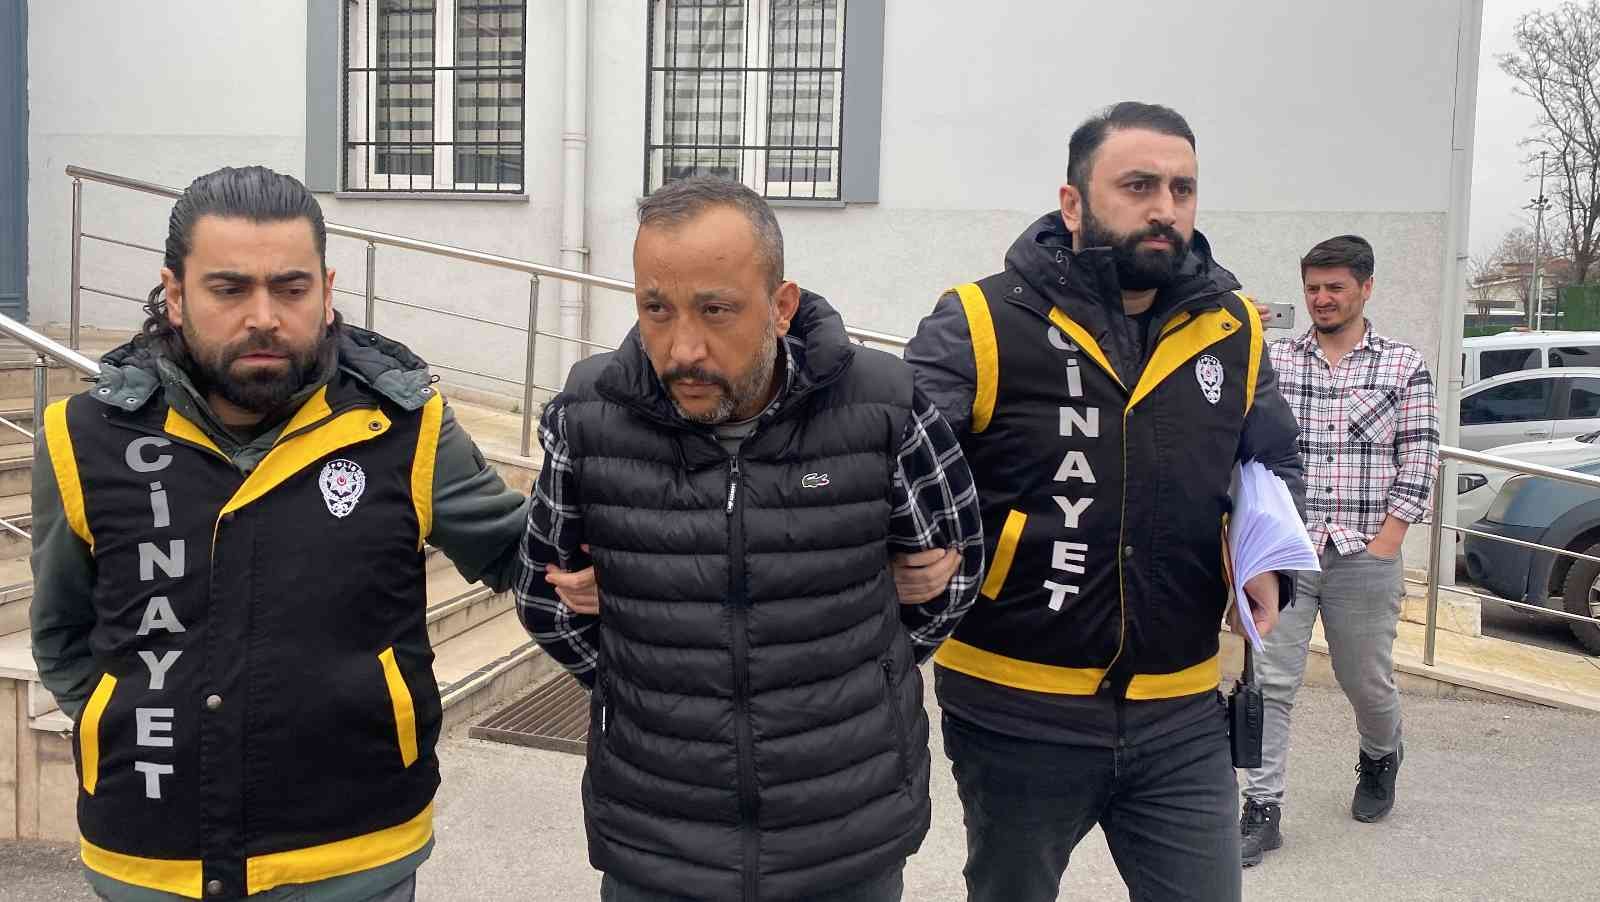 Bursa’da kızının gözü önünde 41 yaşındaki kadını öldüren saplantılı aşık, adliyeye sevk edildi